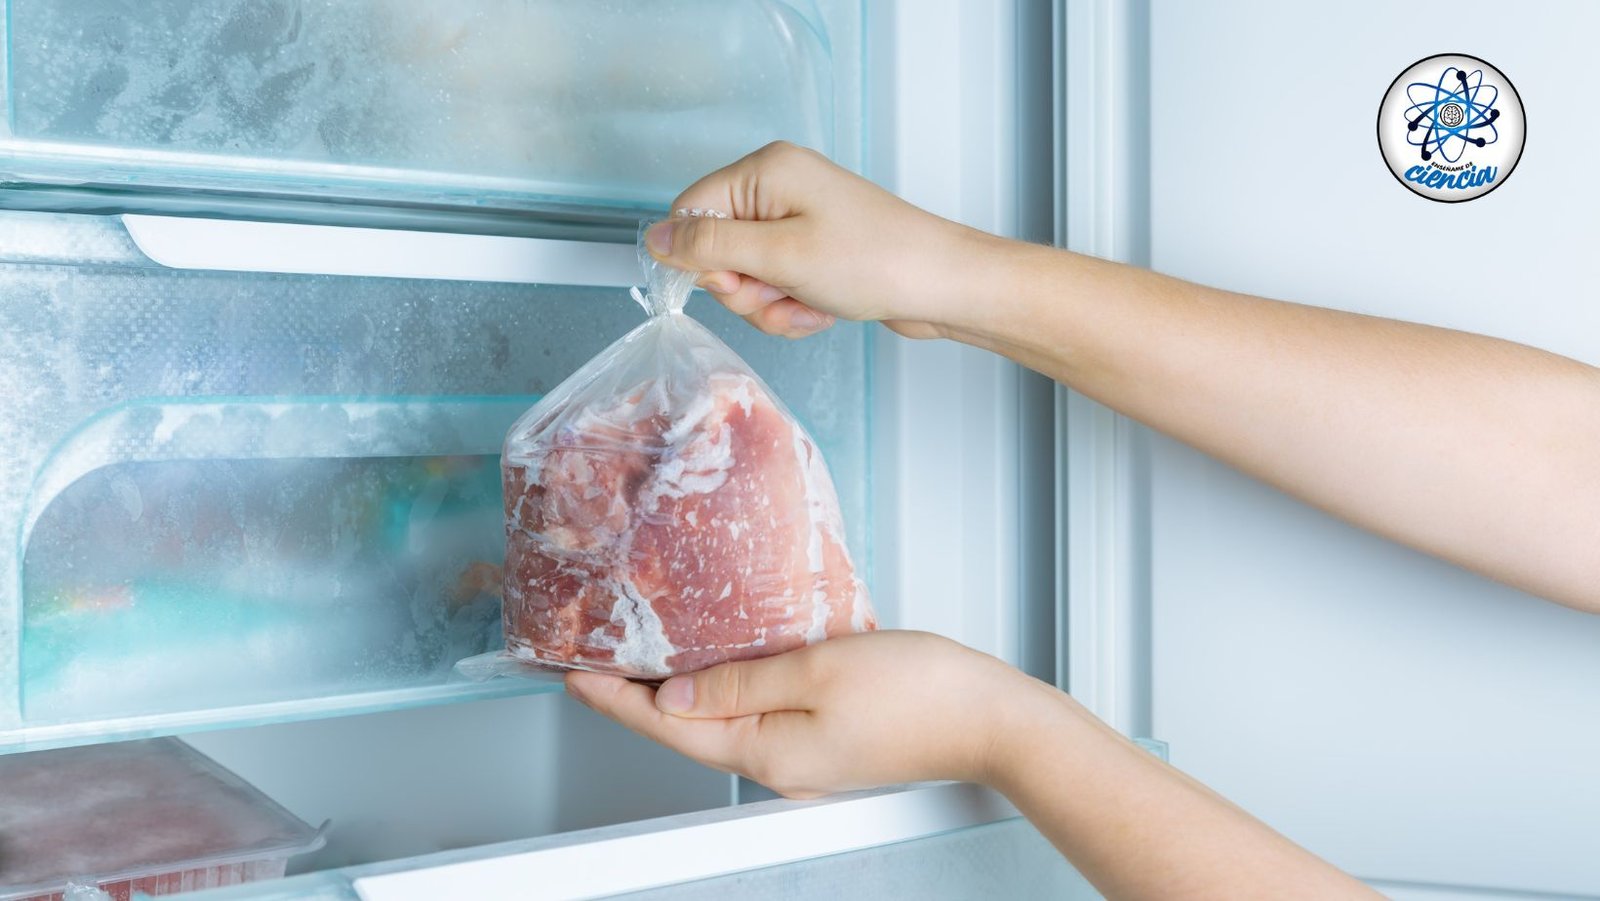 Descongelar y volver a congelar carne: riesgos y consejos para hacerlo de forma segura